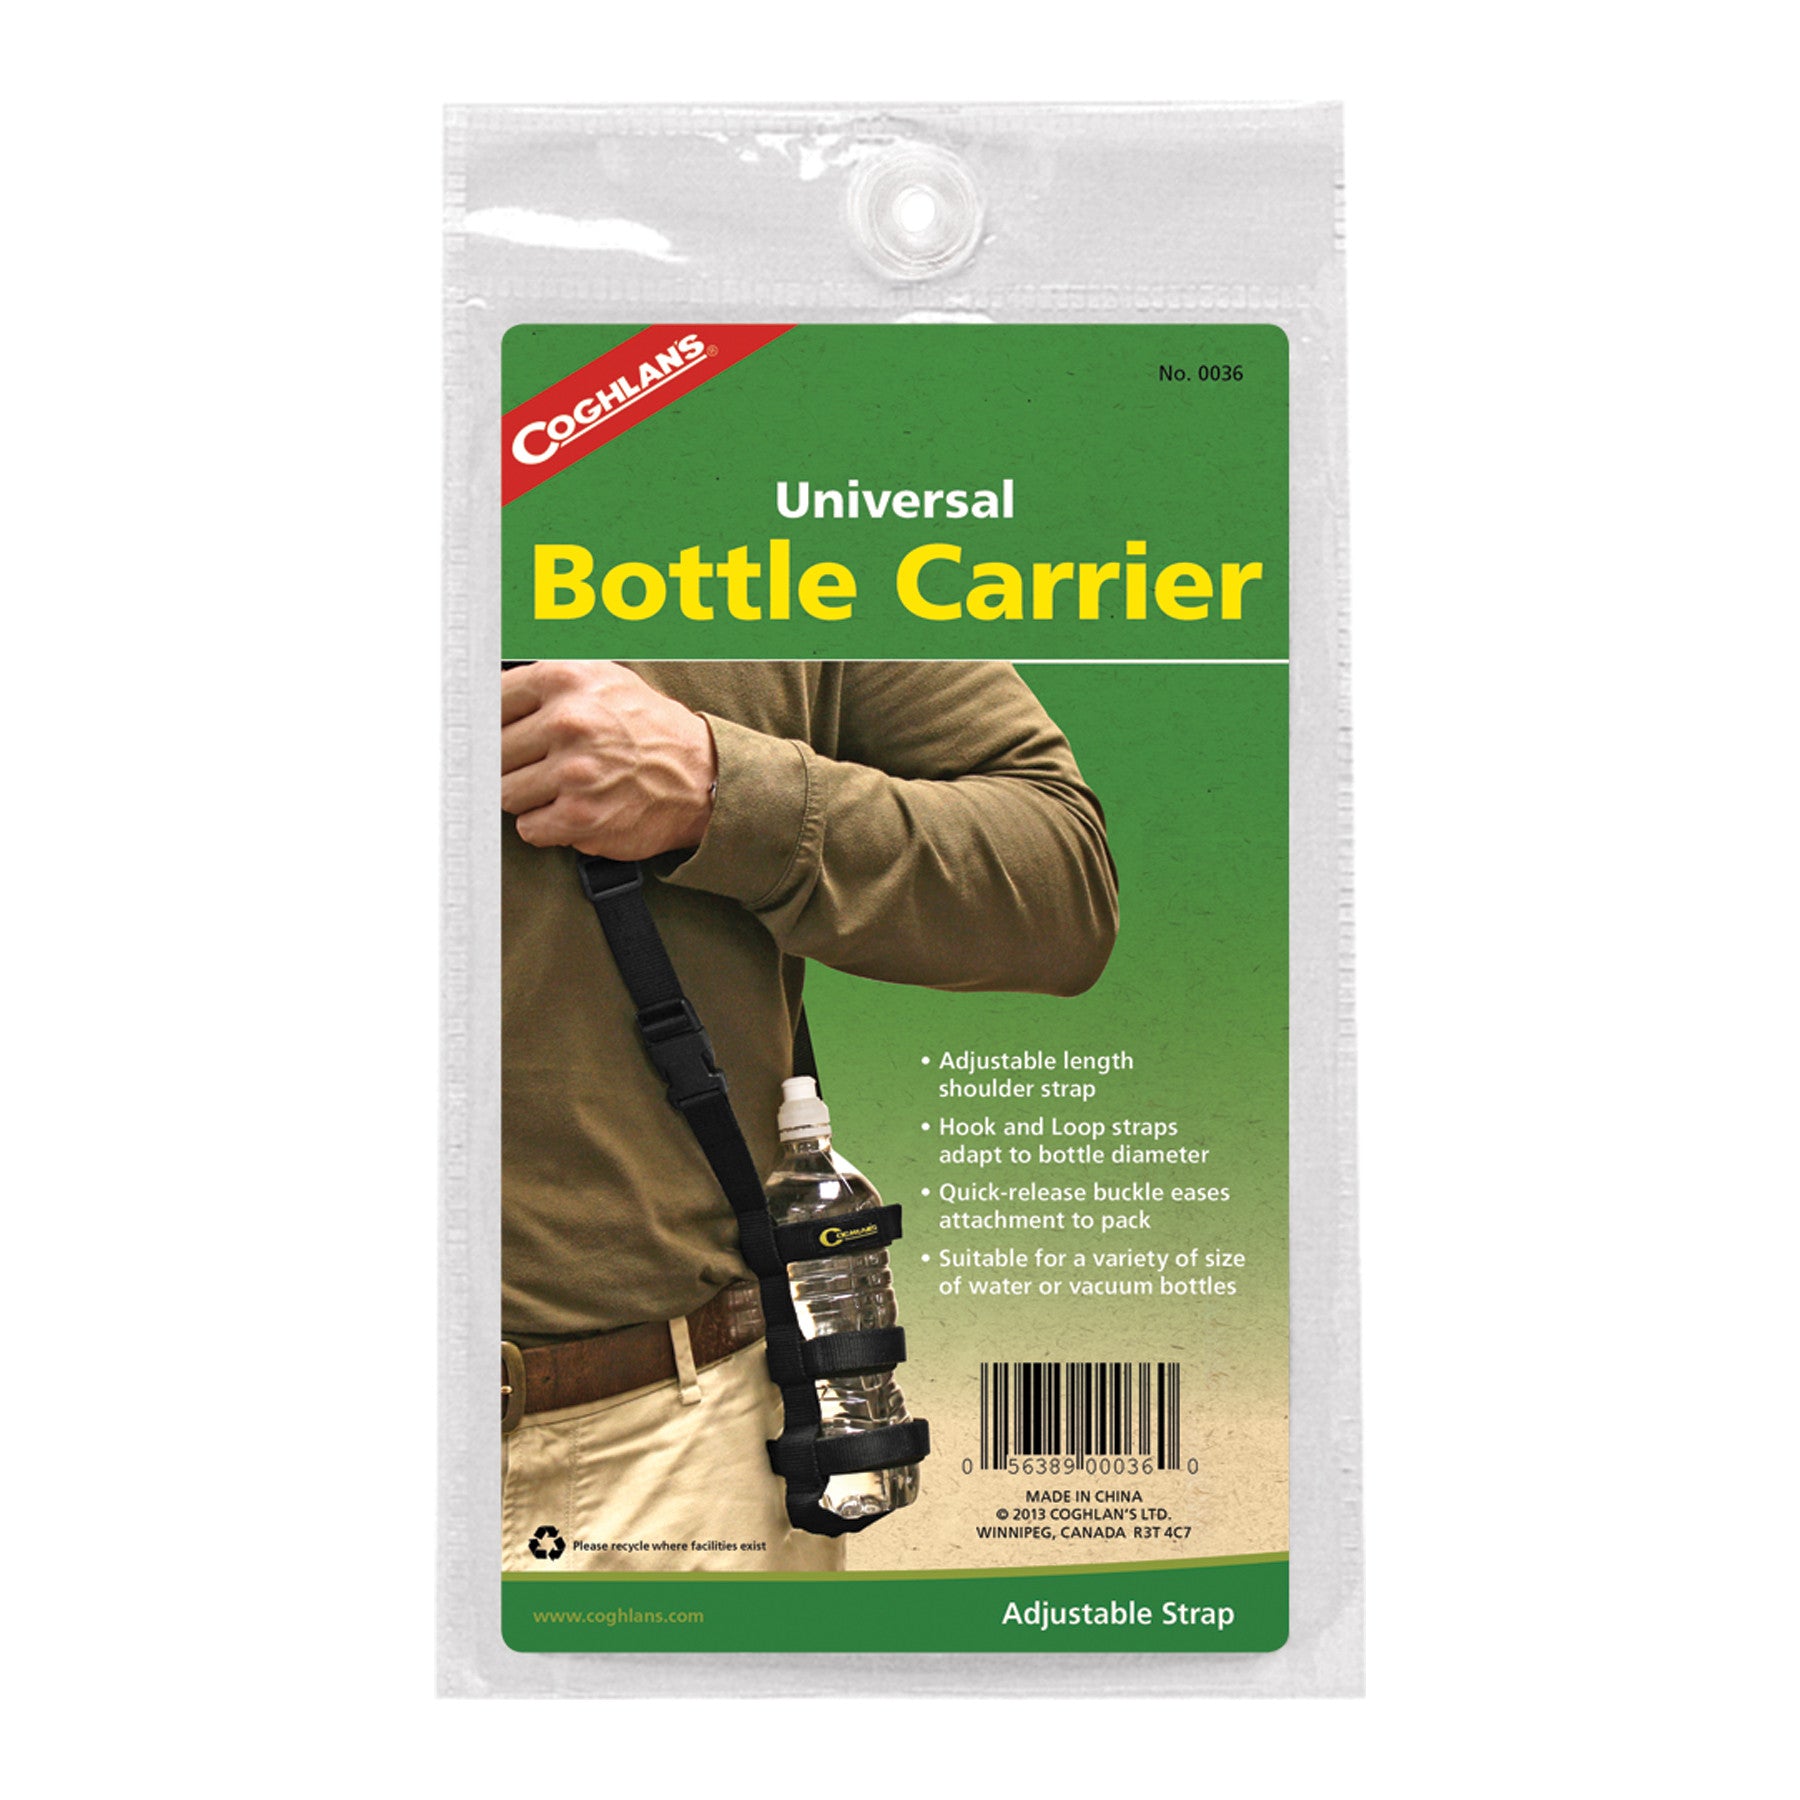 Coghlan's Bottle Carrier